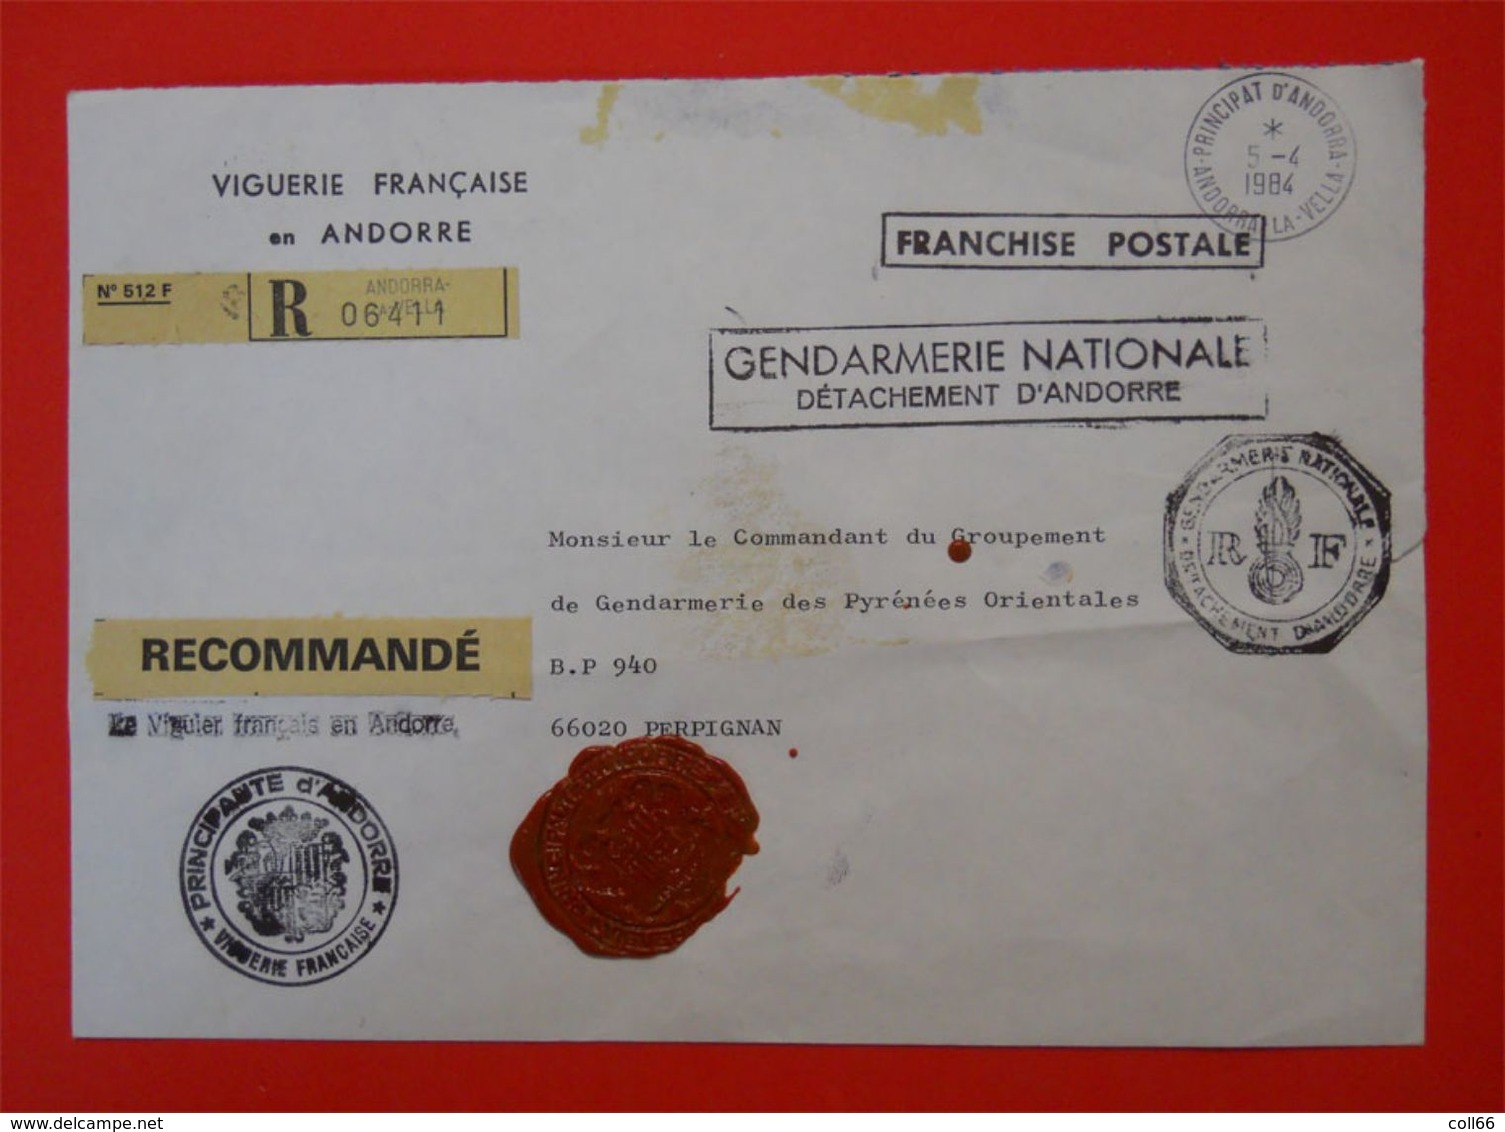 RARE Enveloppe Viguerie Française En Andorre Franchise Postale Gendarmerie Nationale & Sceaux Cachets De Cire 66 P-O - Documents